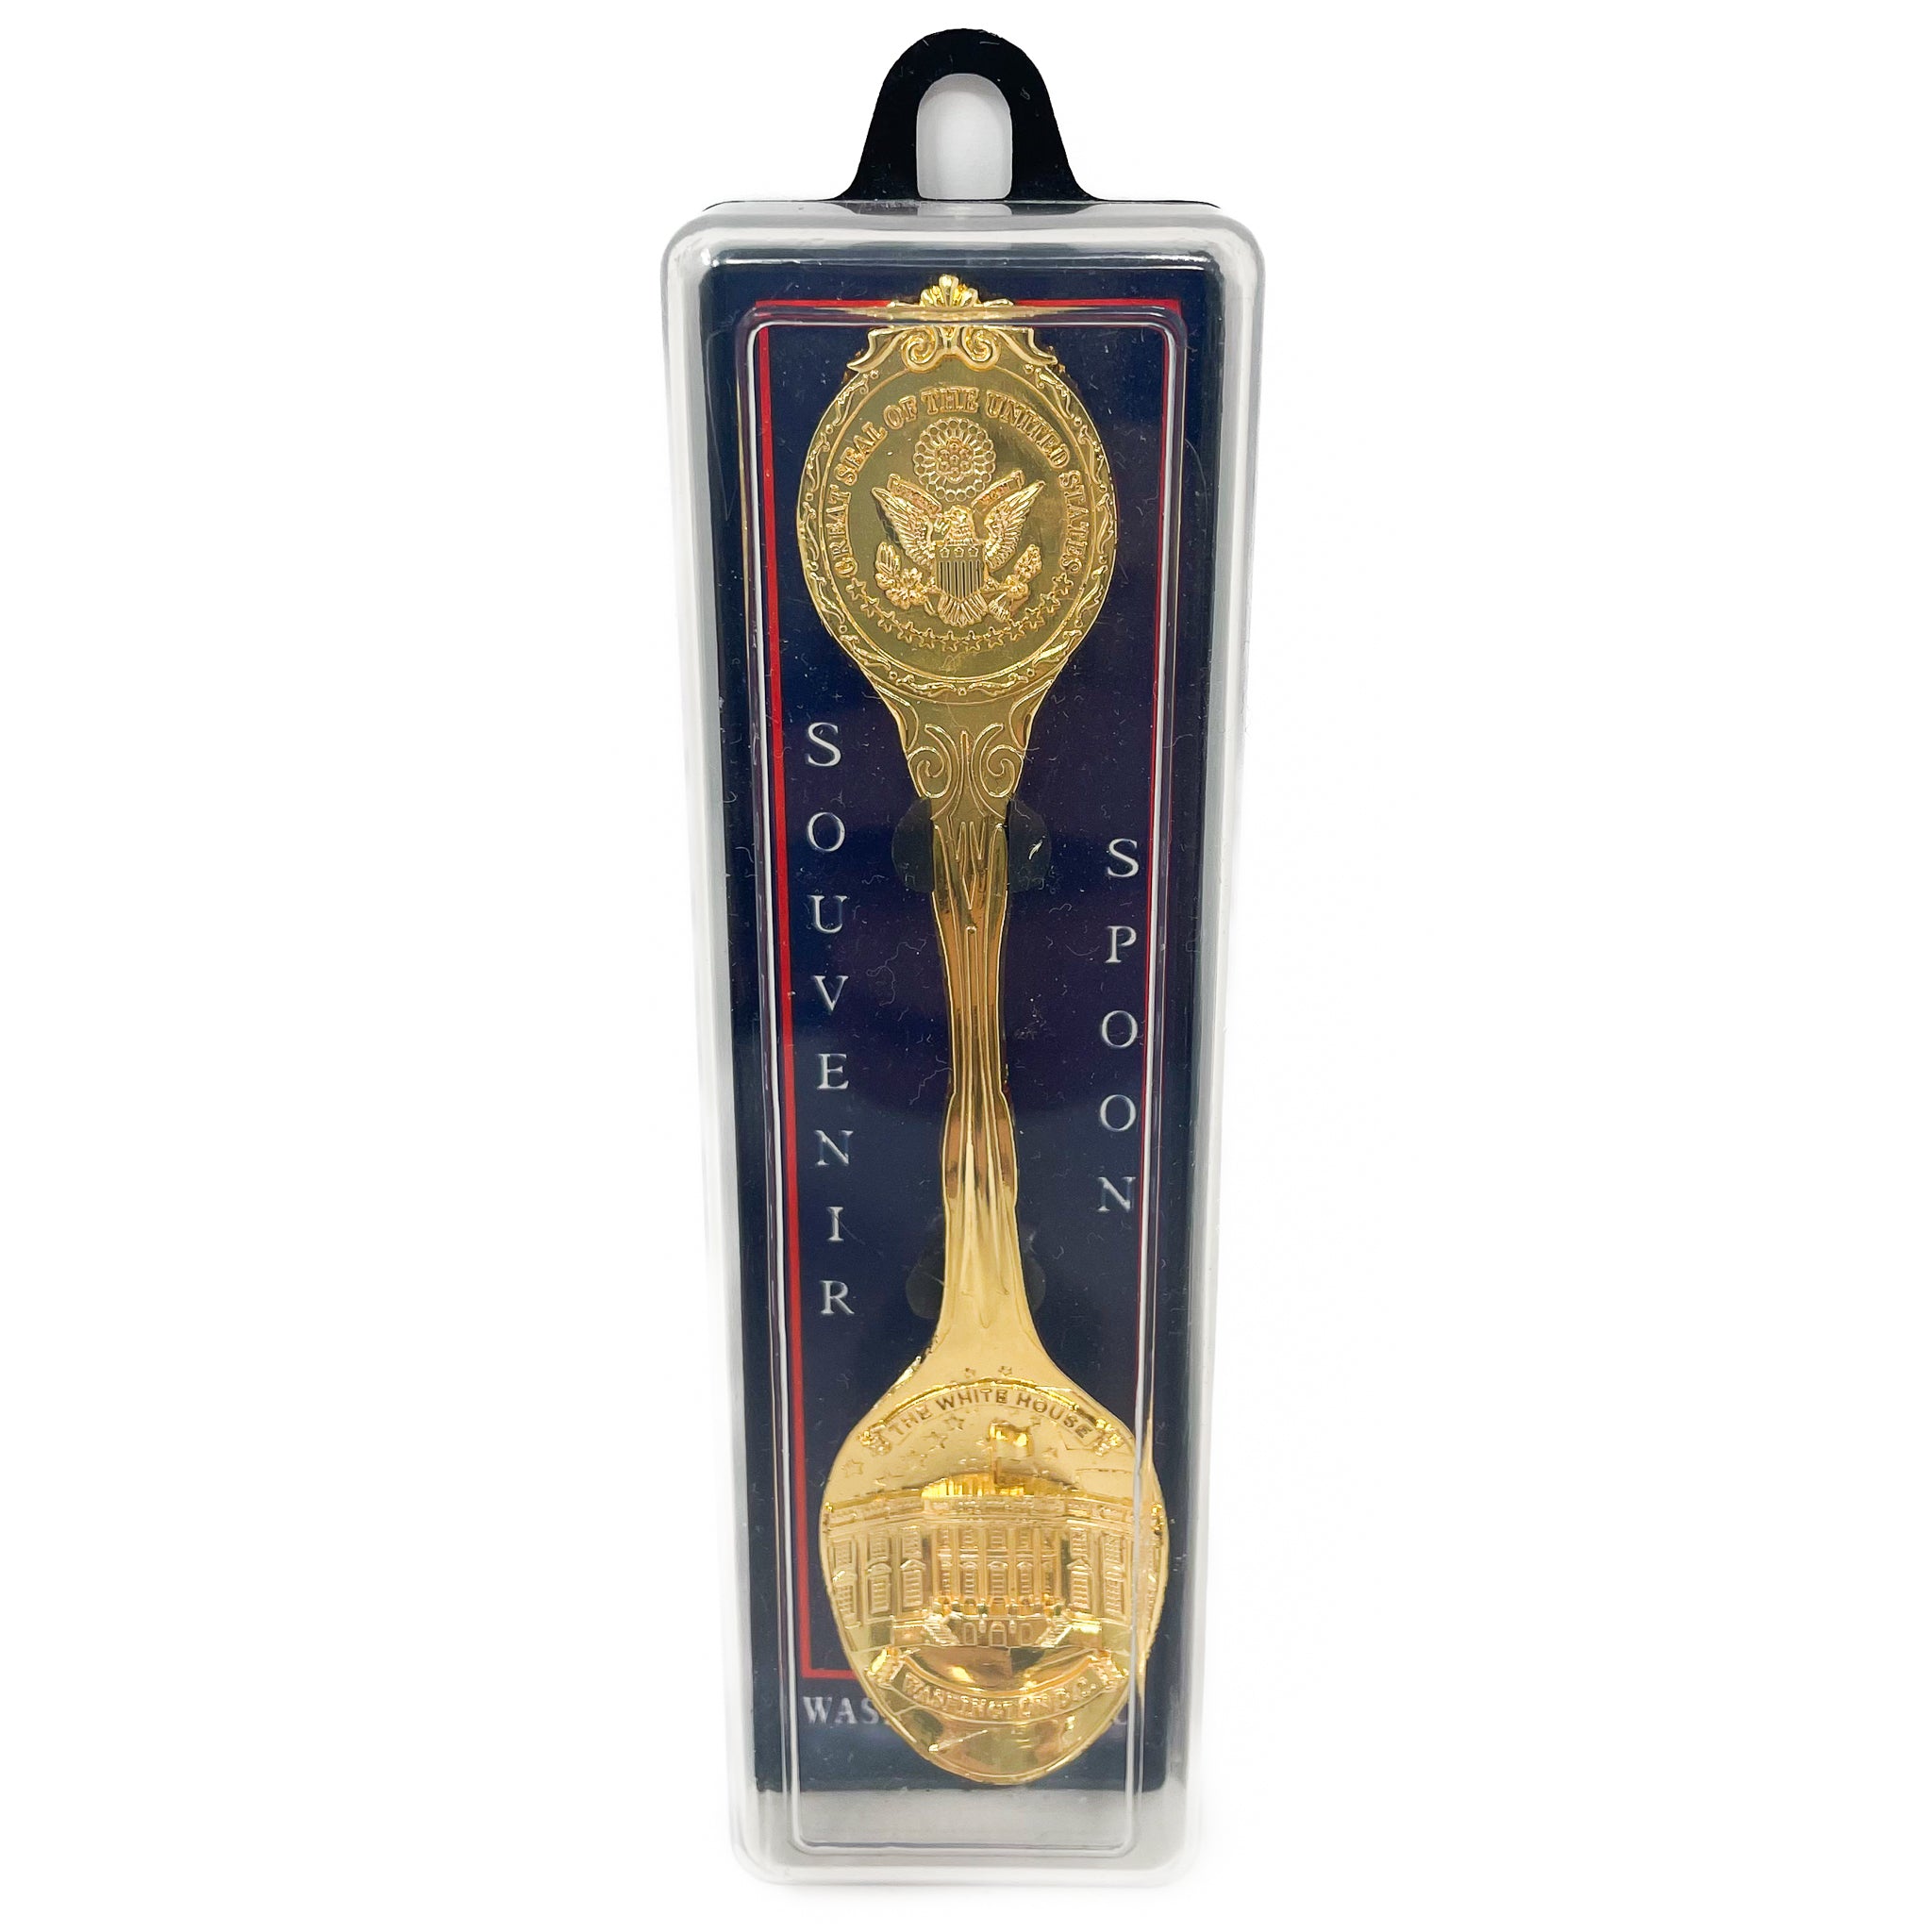 Washington D.C. Souvenir Spoon (Multiple Styles)